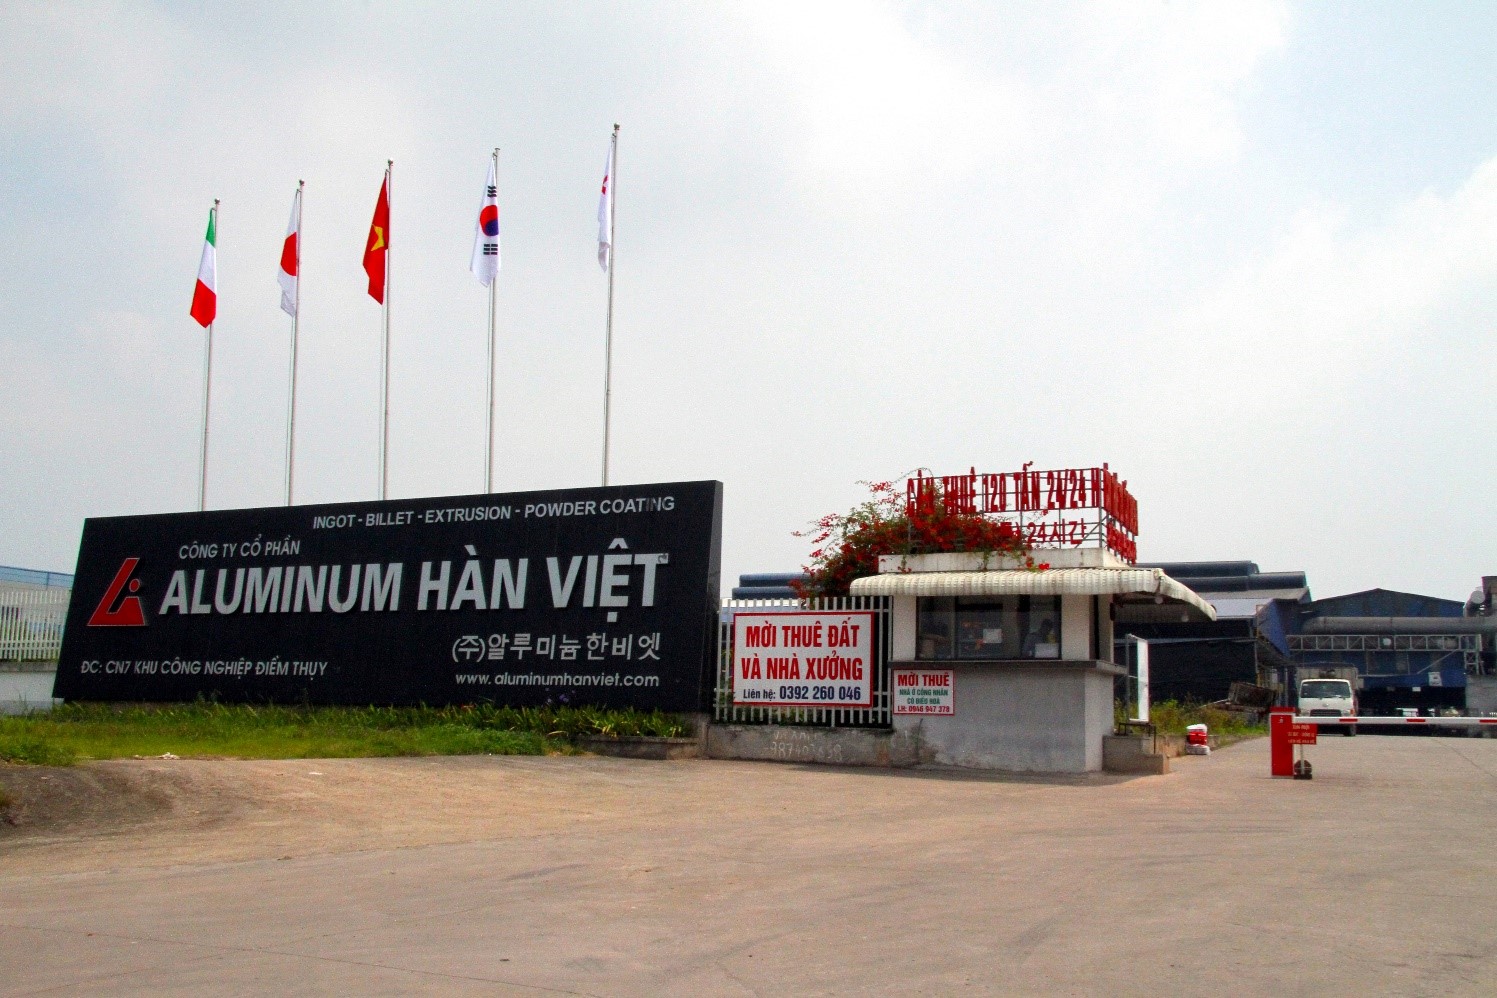 Công ty nhôm Hàn Việt (Aluminum Hàn Việt) tại KCN Điềm Thụy là điển hình cho doanh nghiệp có công nghệ sản xuất hiện đại, hướng tới sản xuất “xanh”. 